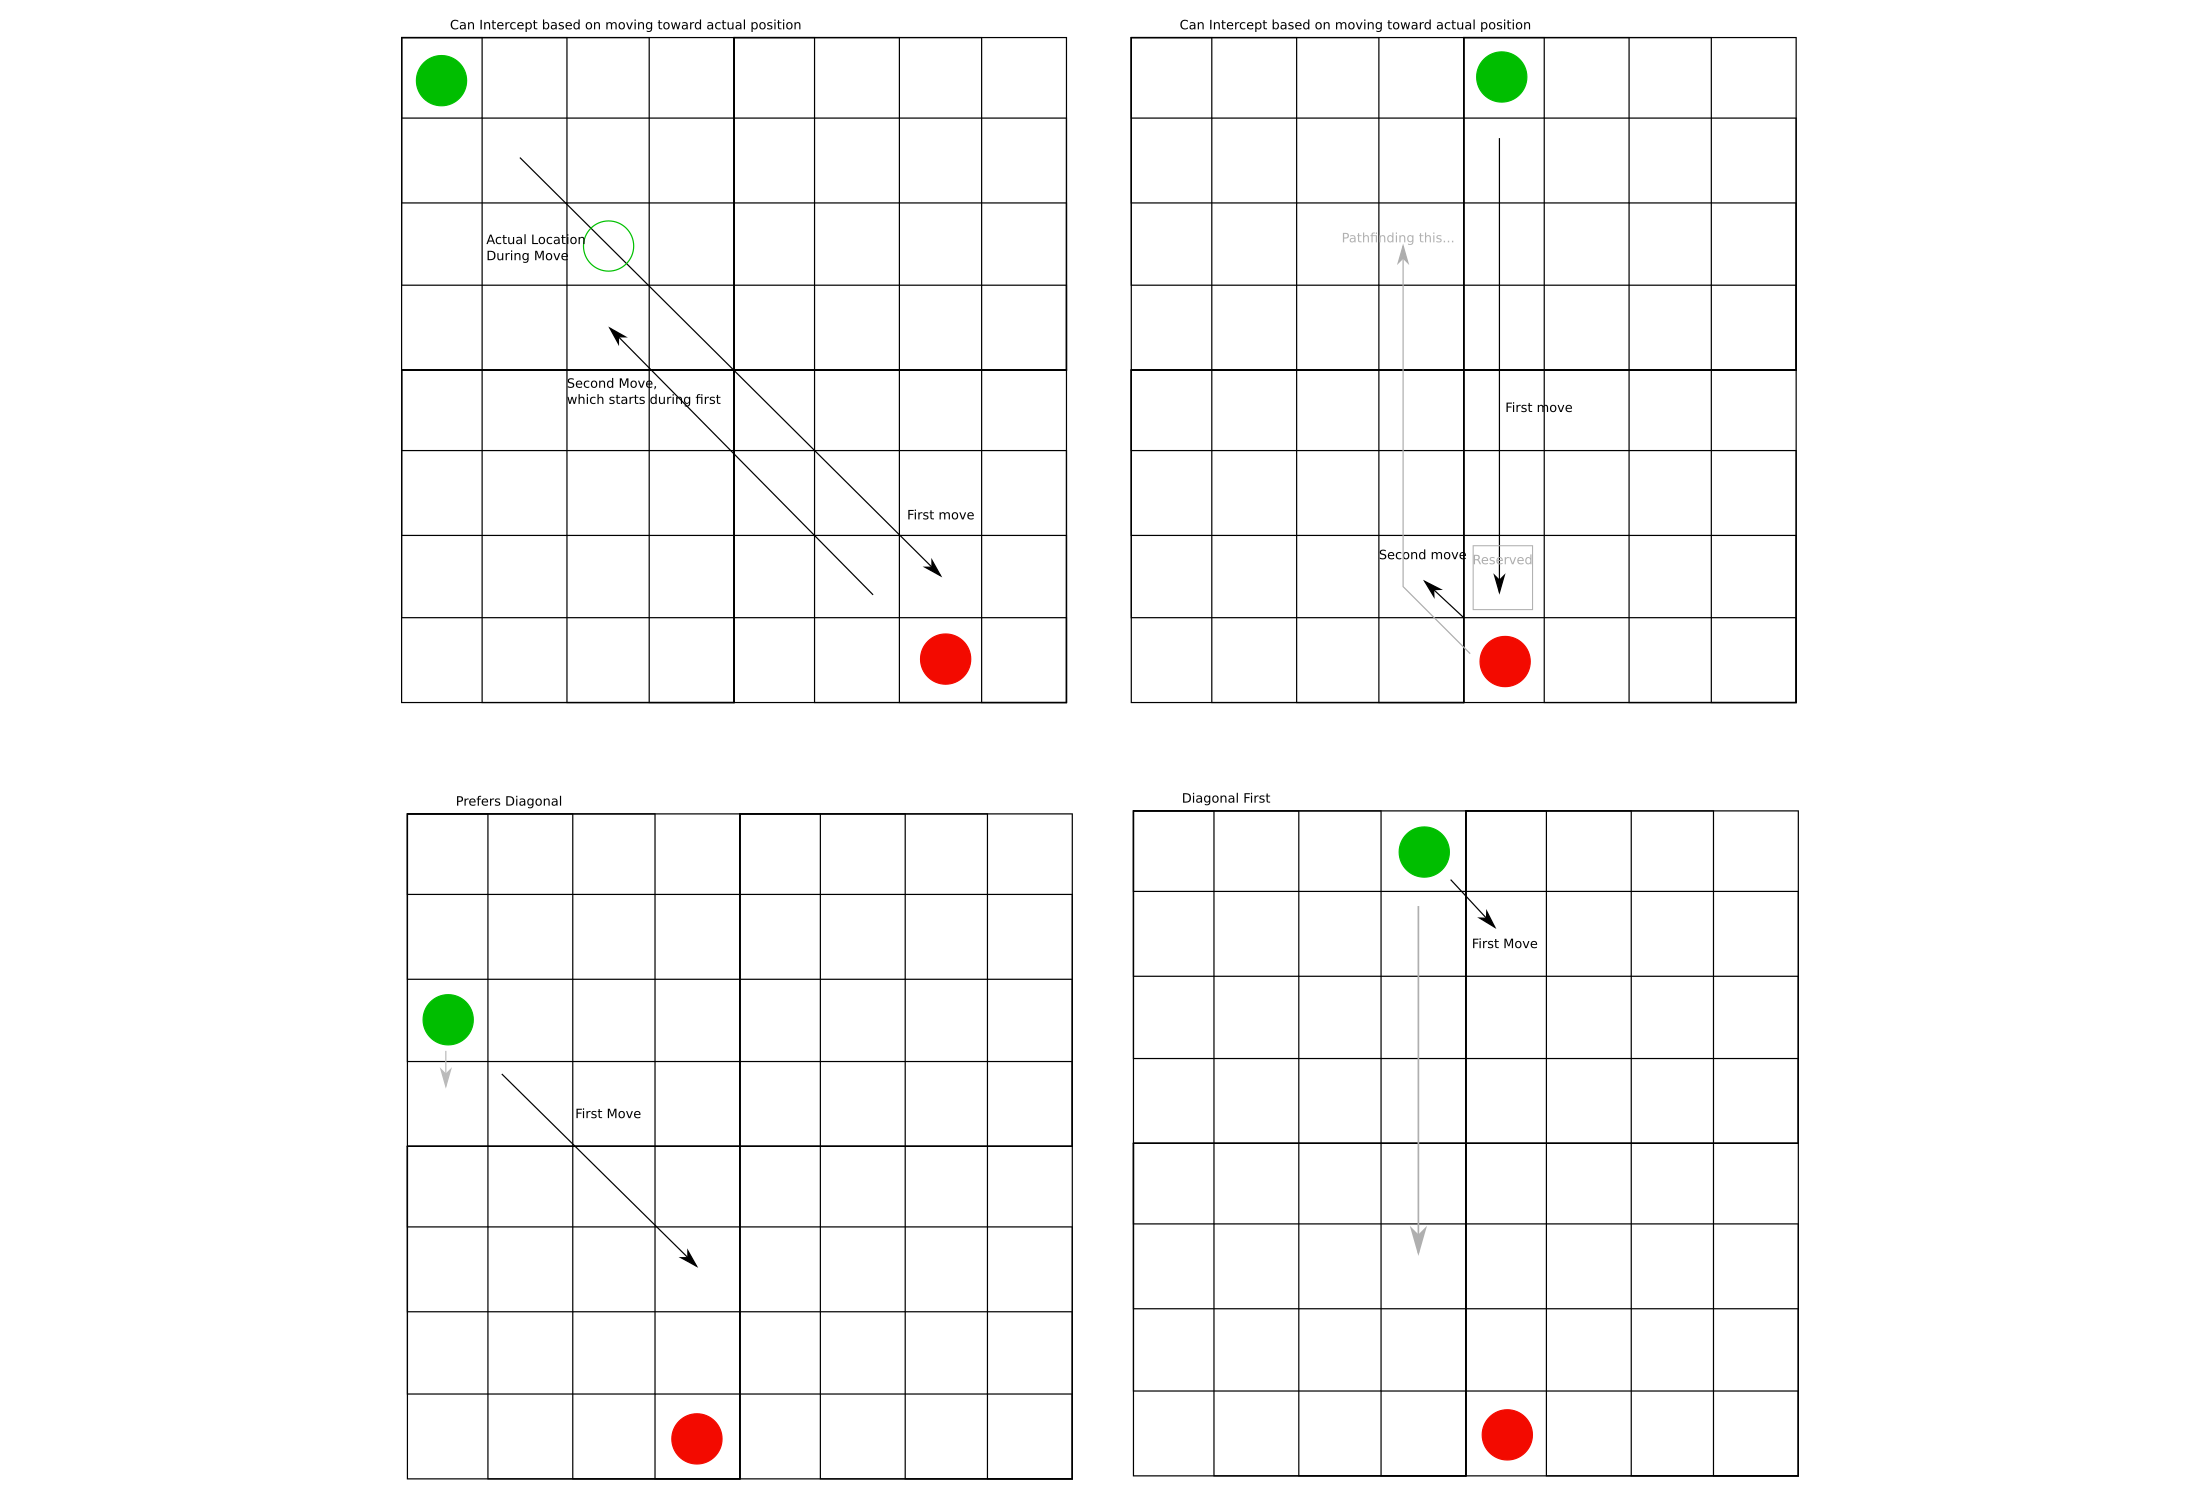 Exemples de déplacements et de designs de plateaux carrés vs hexagonaux